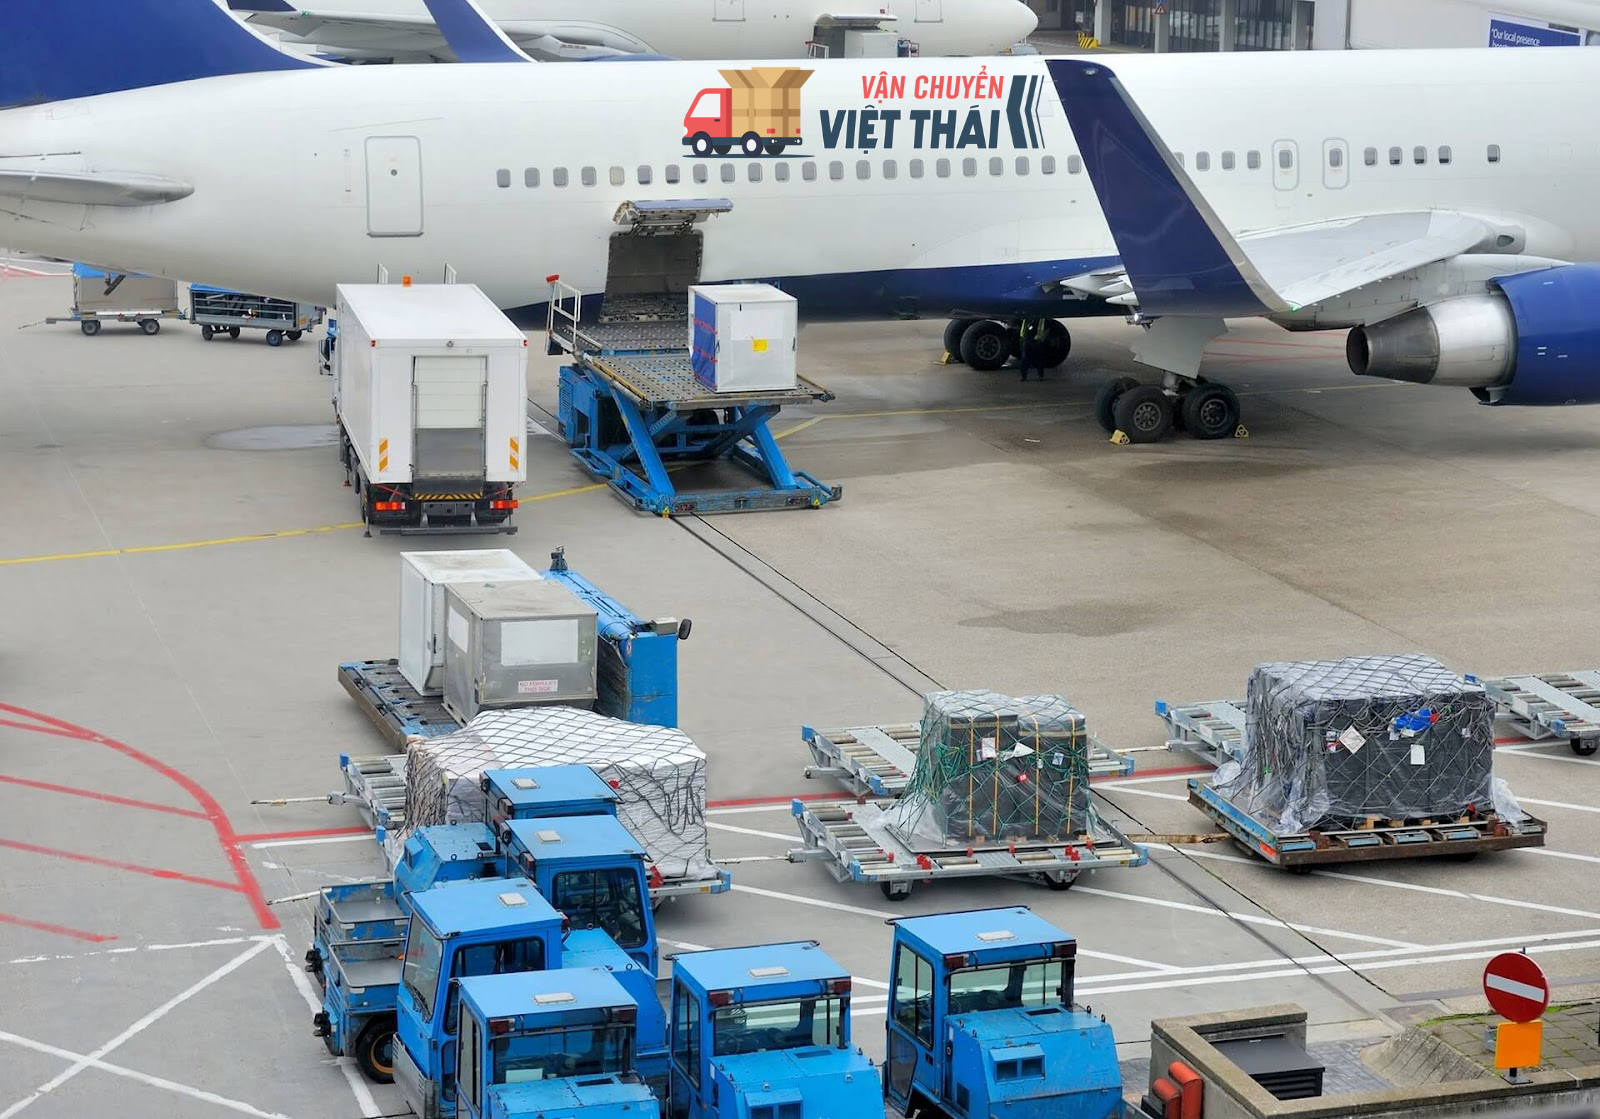 Vận chuyển Việt Thái cung cấp dịch vụ vận chuyển hàng dễ vỡ bằng đường hàng không